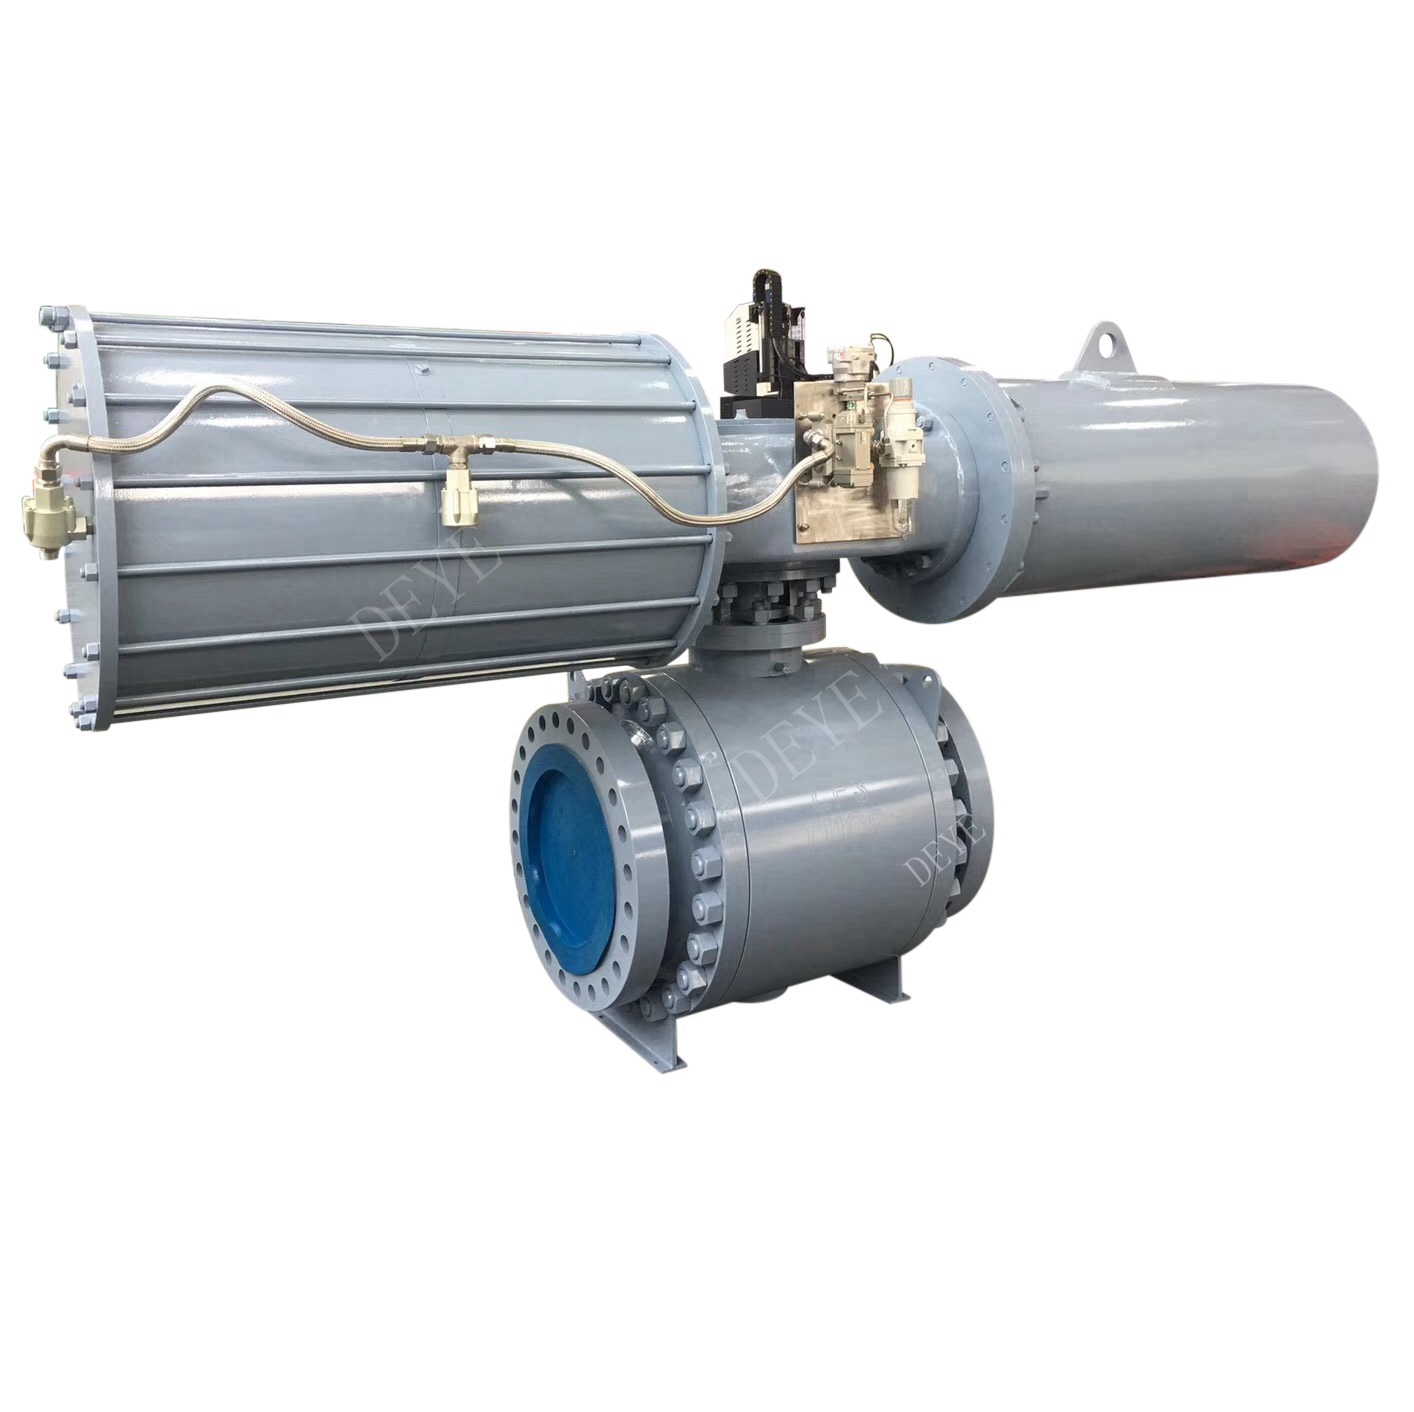 شیر توپی ریختگی فولاد API 600LBS با محرک پنوماتیک (BV-0600-08-P)